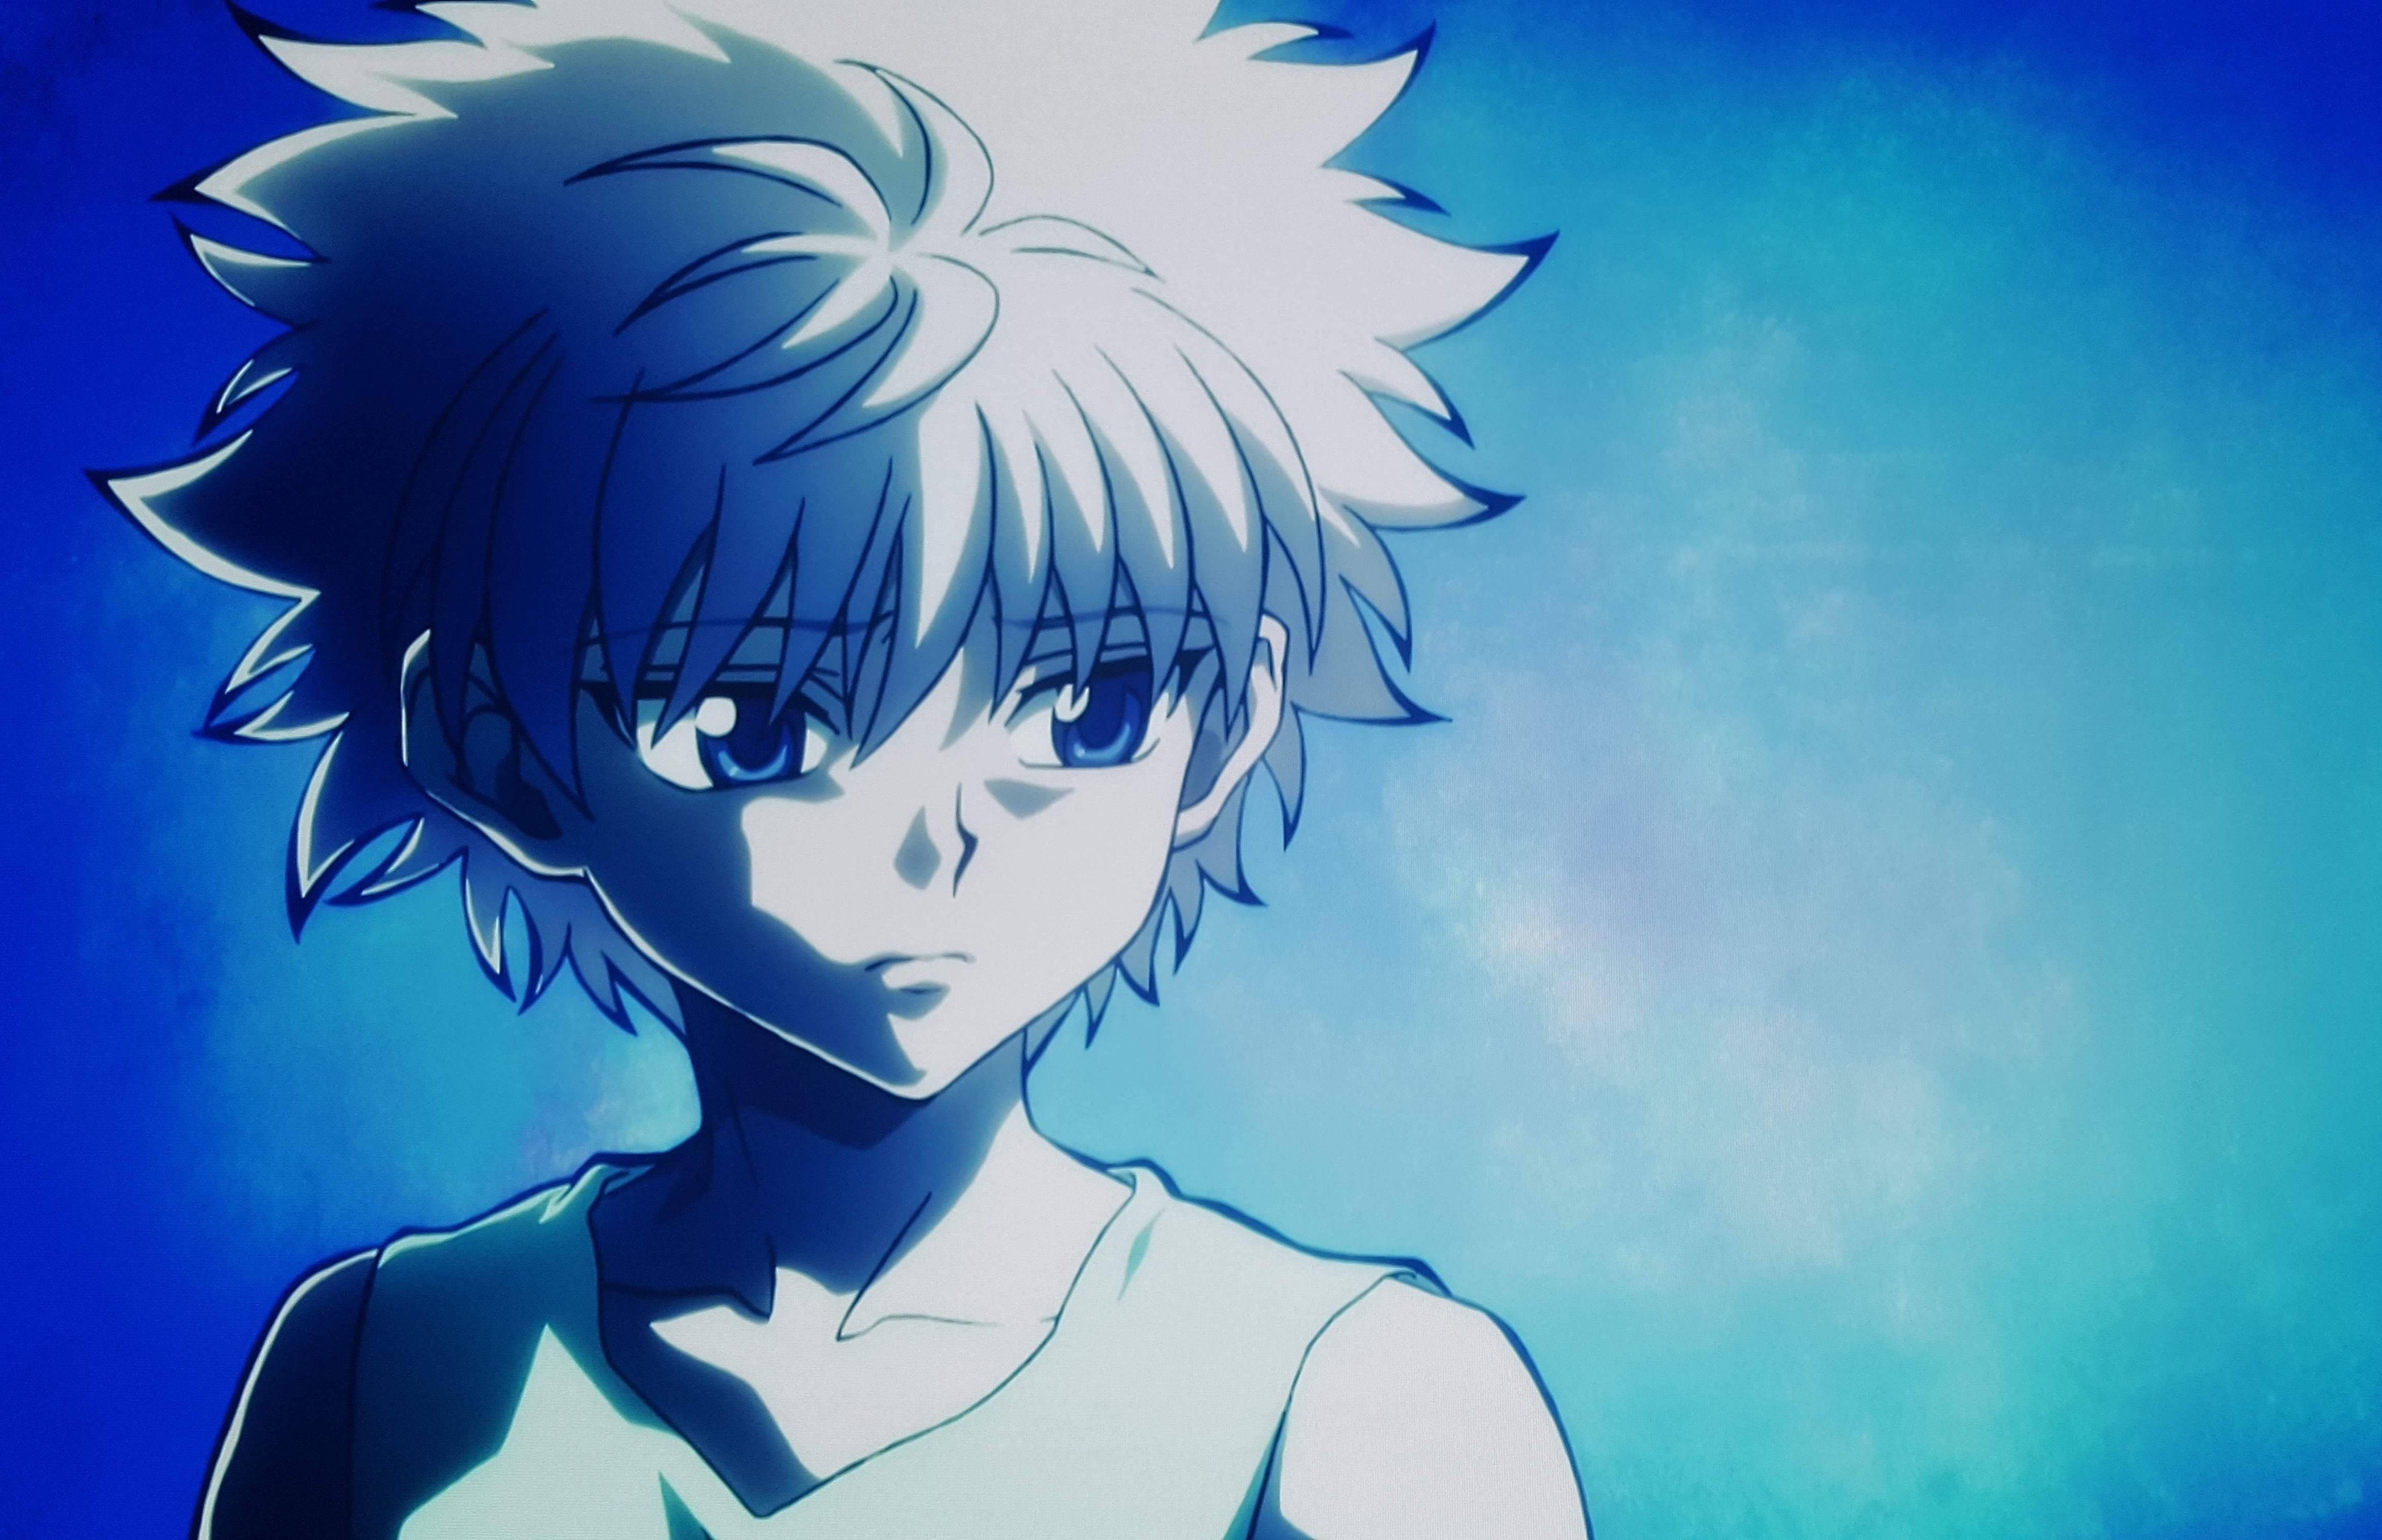 Những hình ảnh về Sad Anime Boy sẽ khiến bạn cảm nhận được cảm xúc đau đớn, nhưng cũng đầy tinh tế và sâu lắng. Hãy xem để thấu hiểu hơn về bộ phim anime này.